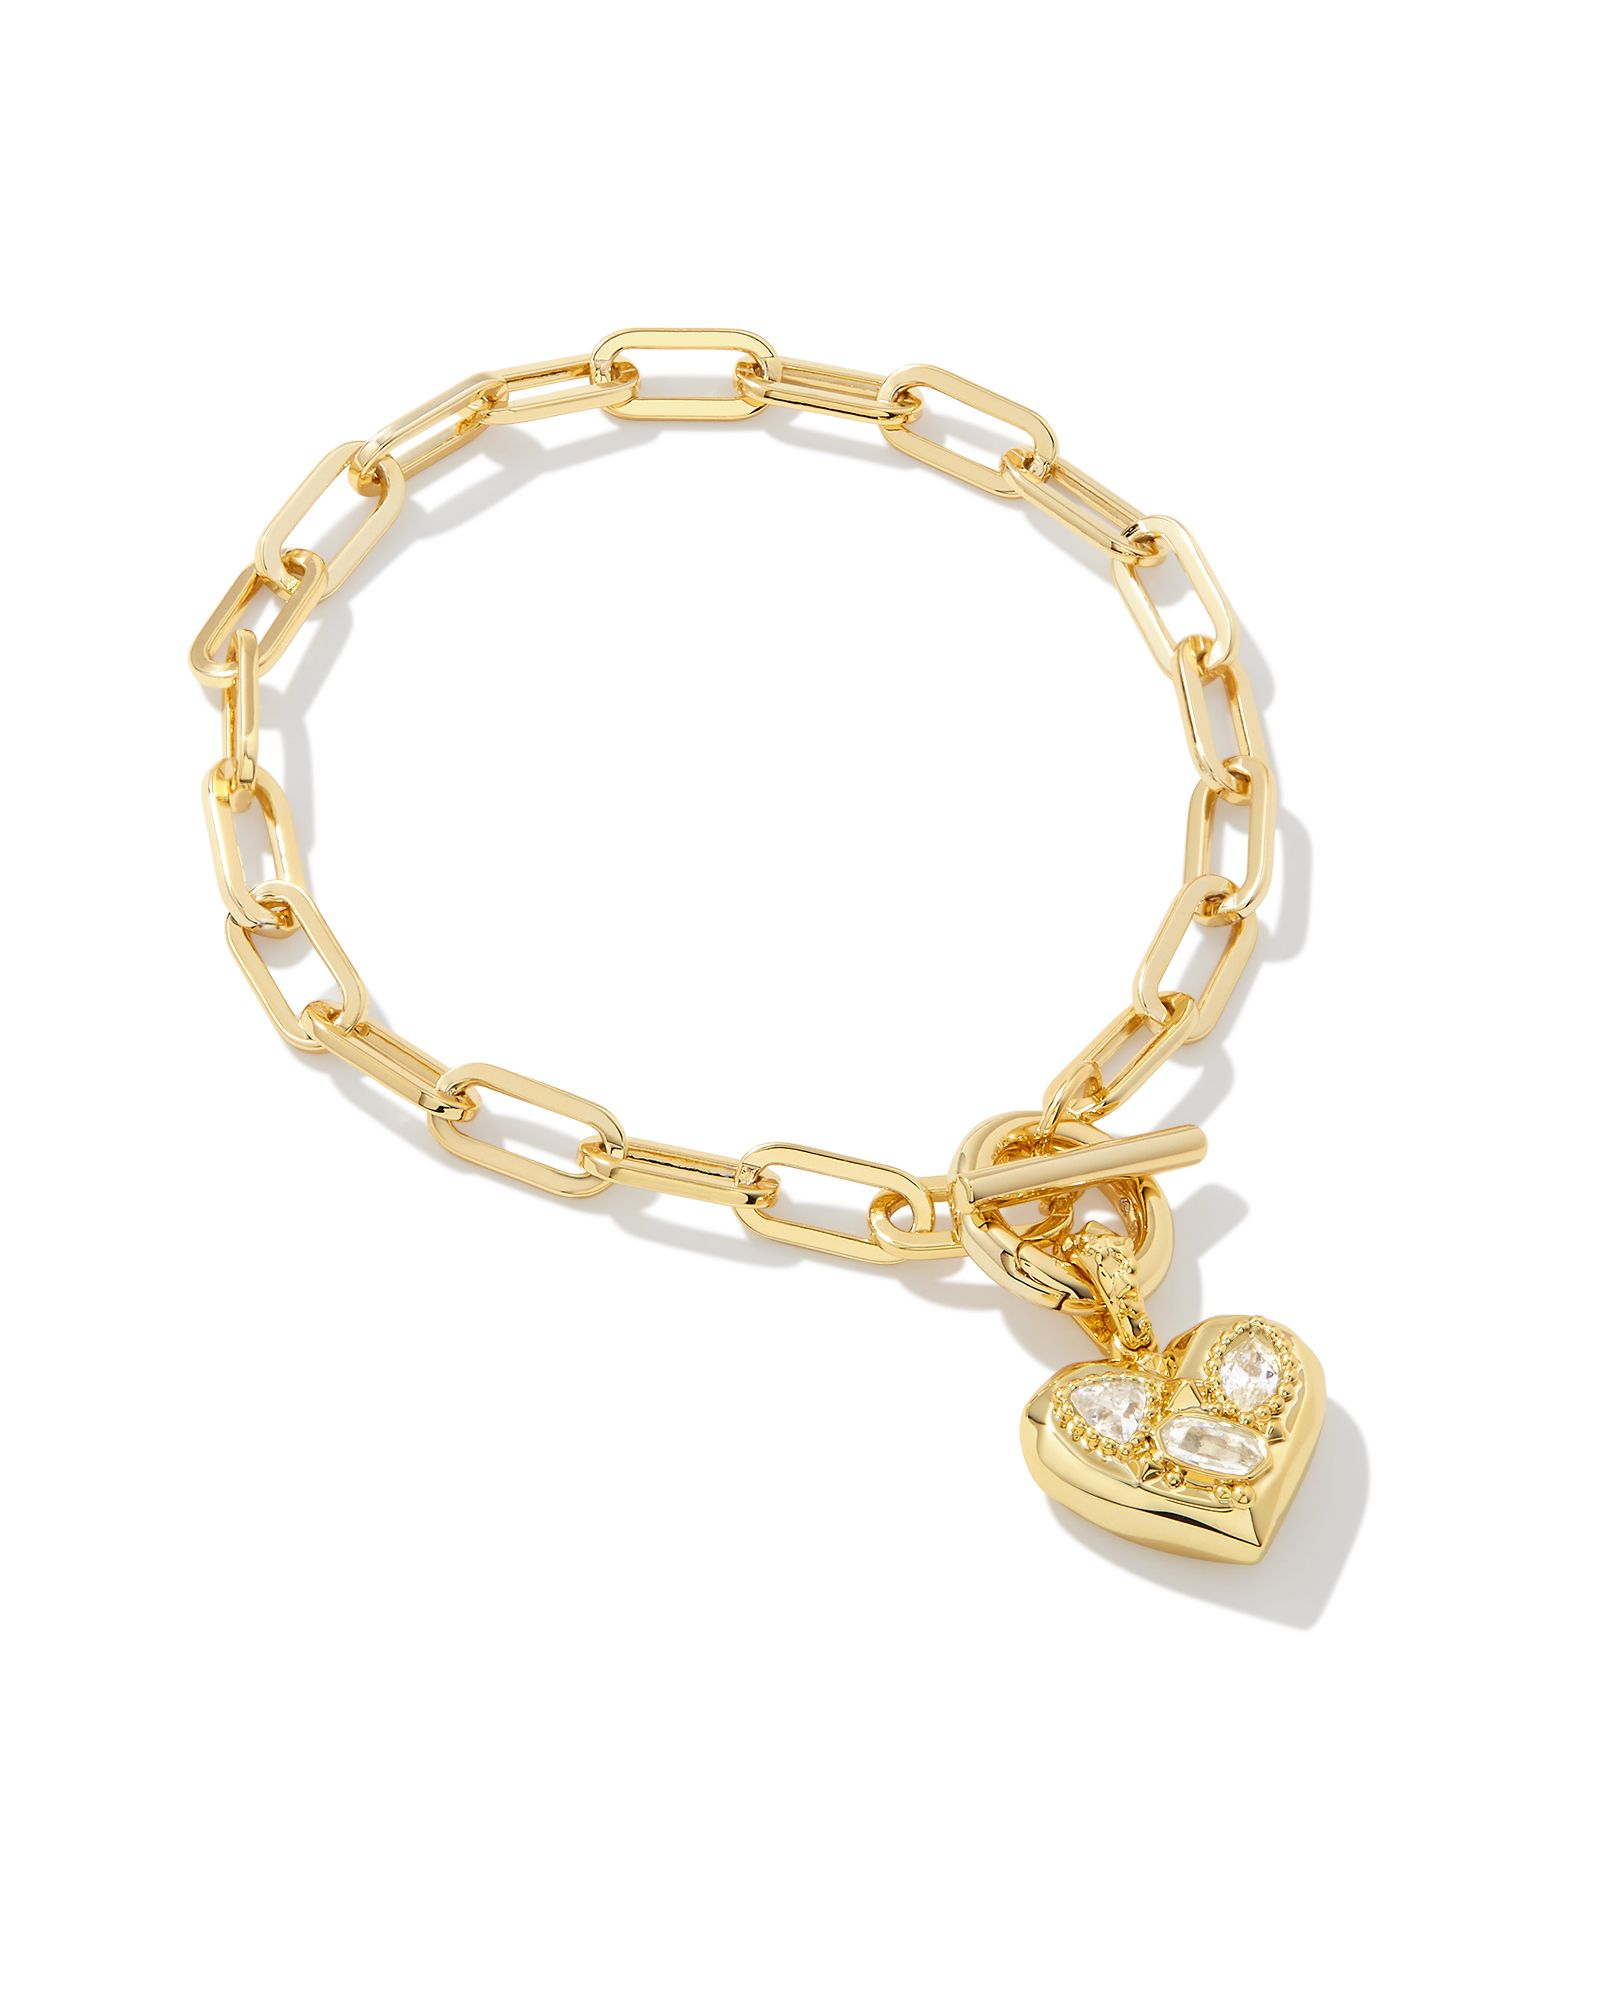 Penny Gold Heart Chain Bracelet in White Crystal | Kendra Scott | Kendra Scott